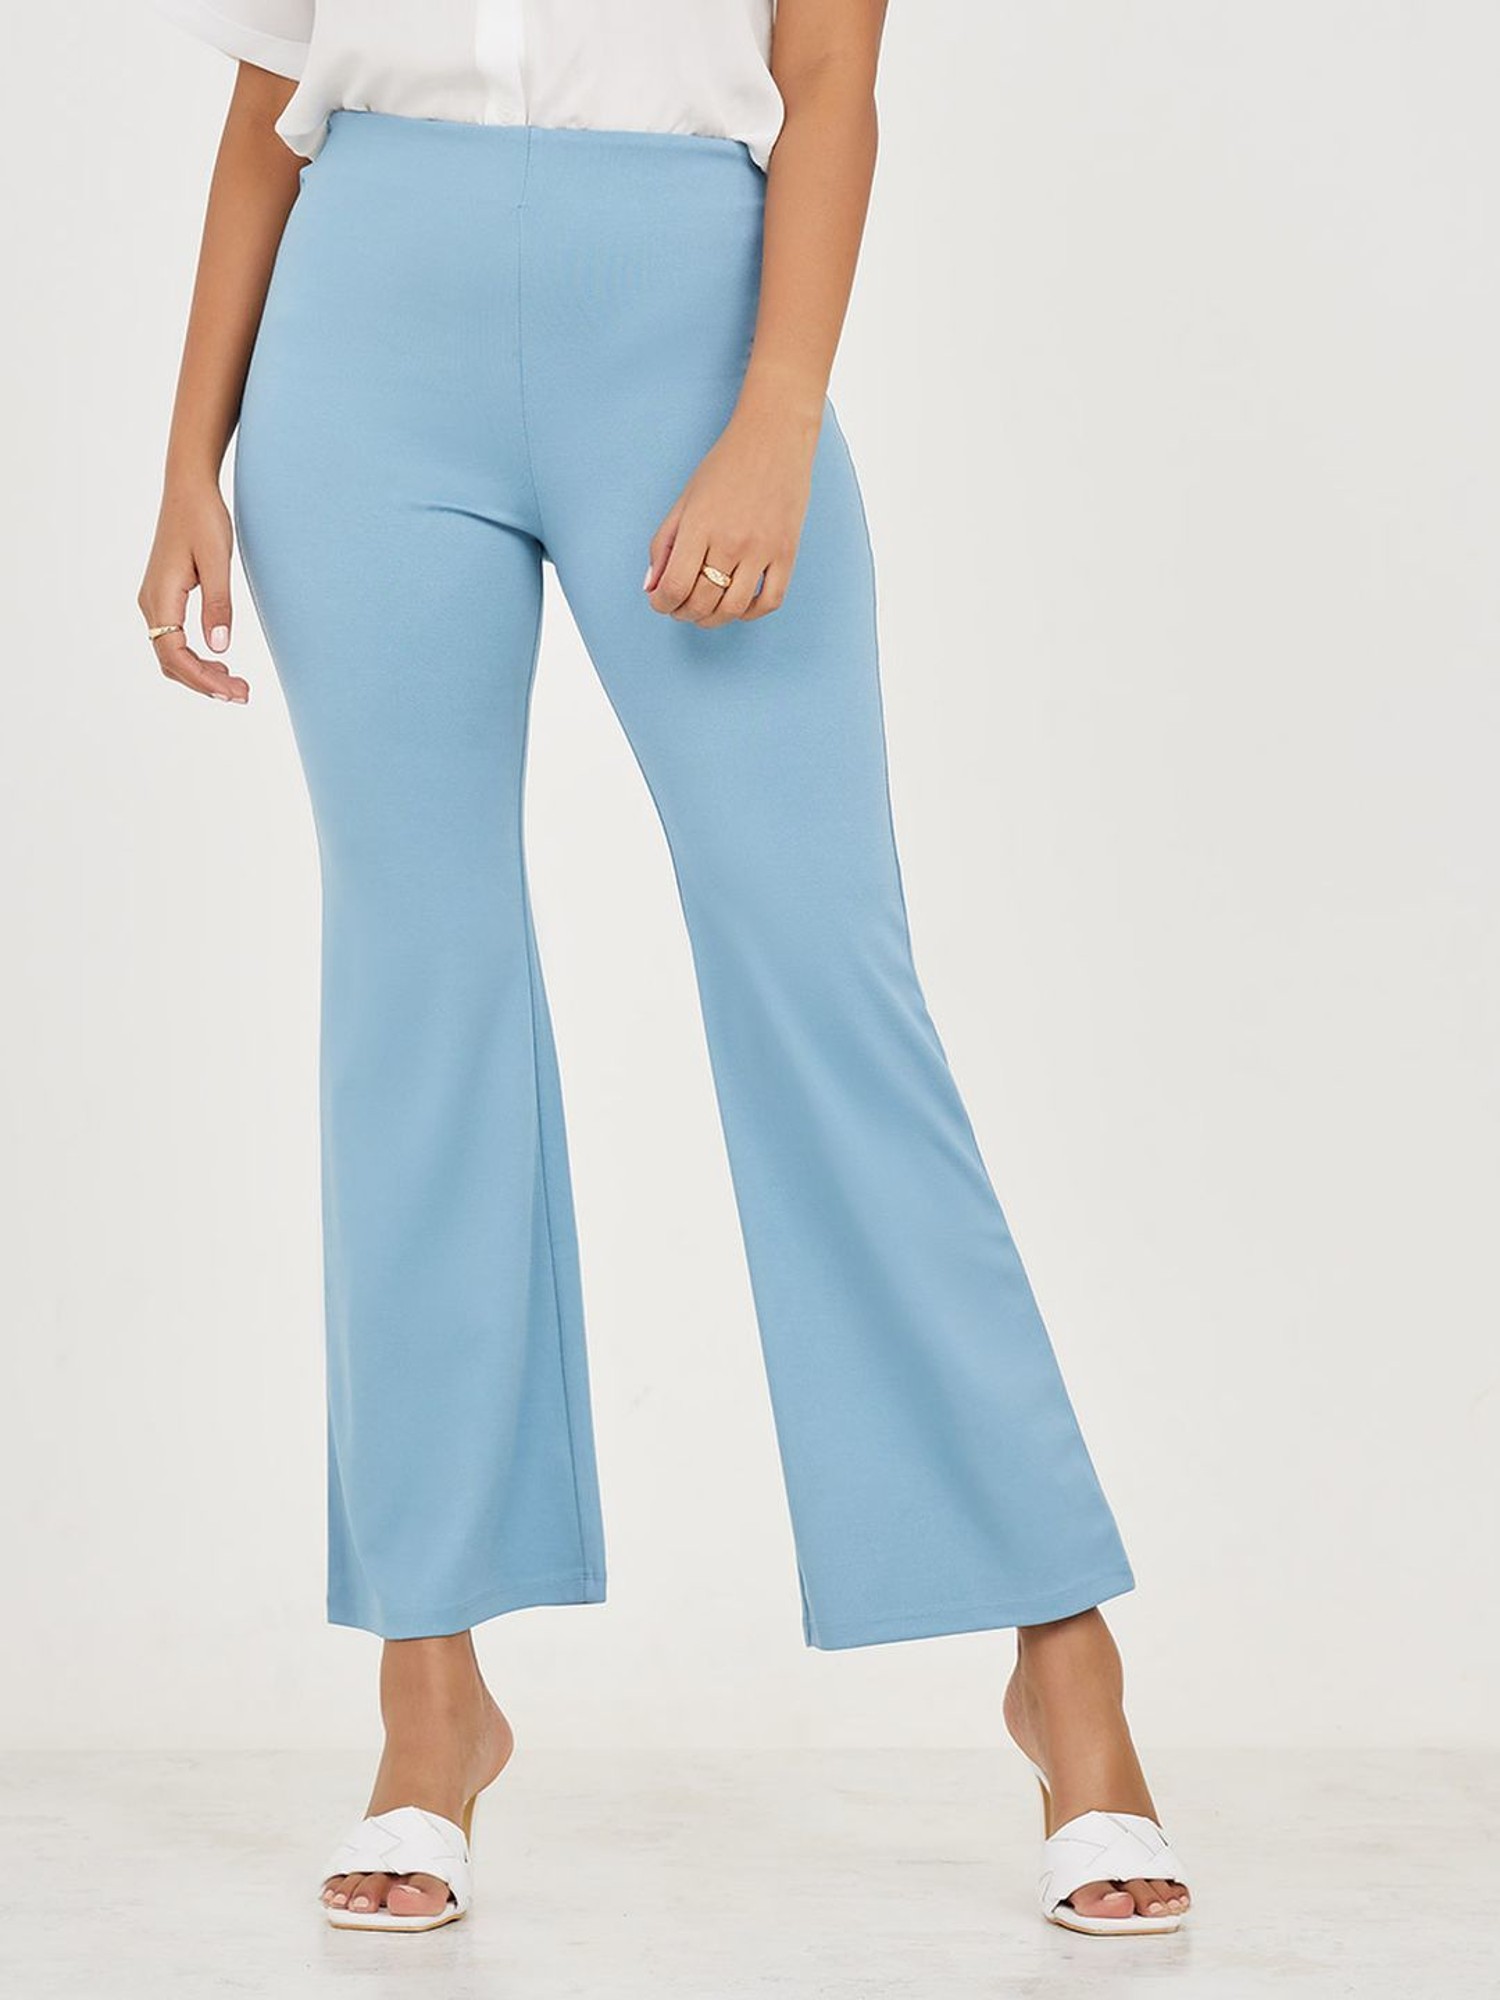 Muvazo Dress Up Flare Pants Blue Buy Muvazo Dress Up Flare Pants Blue  Online at Best Price in India  Nykaa